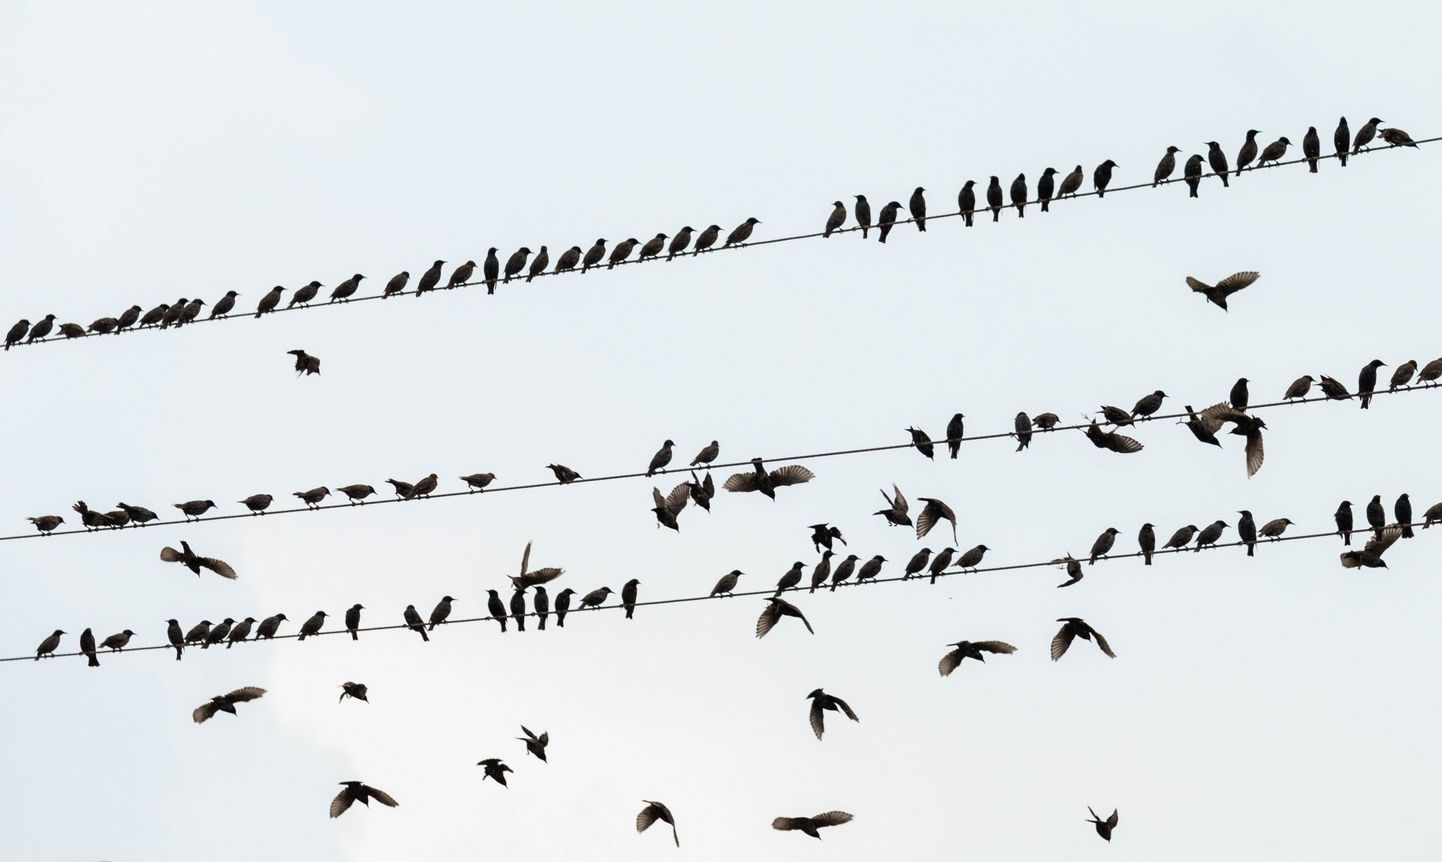 Linnud kogunemas enne pikale teele asumist.